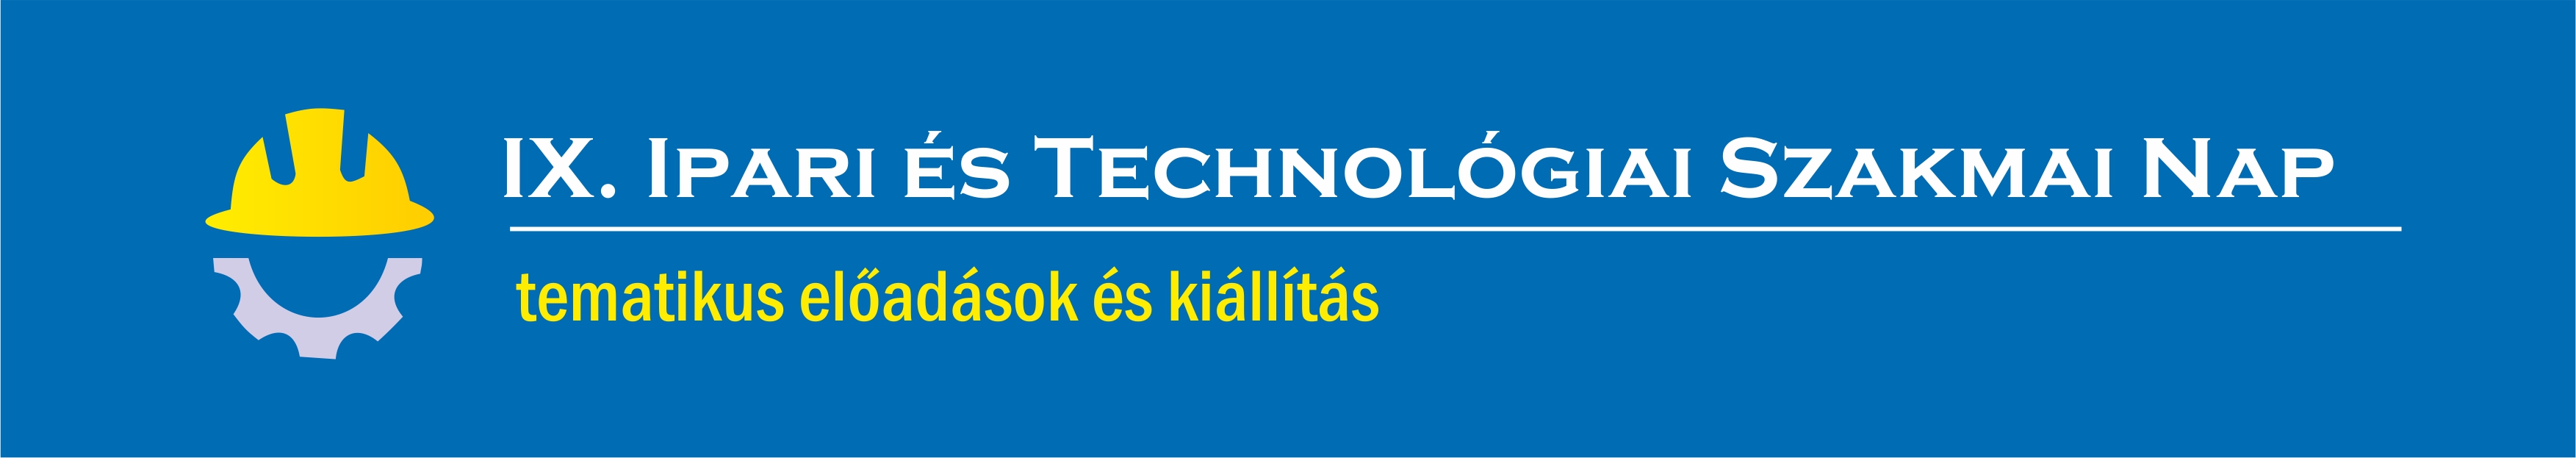 új ipari és technológiai szakmai nap logo2